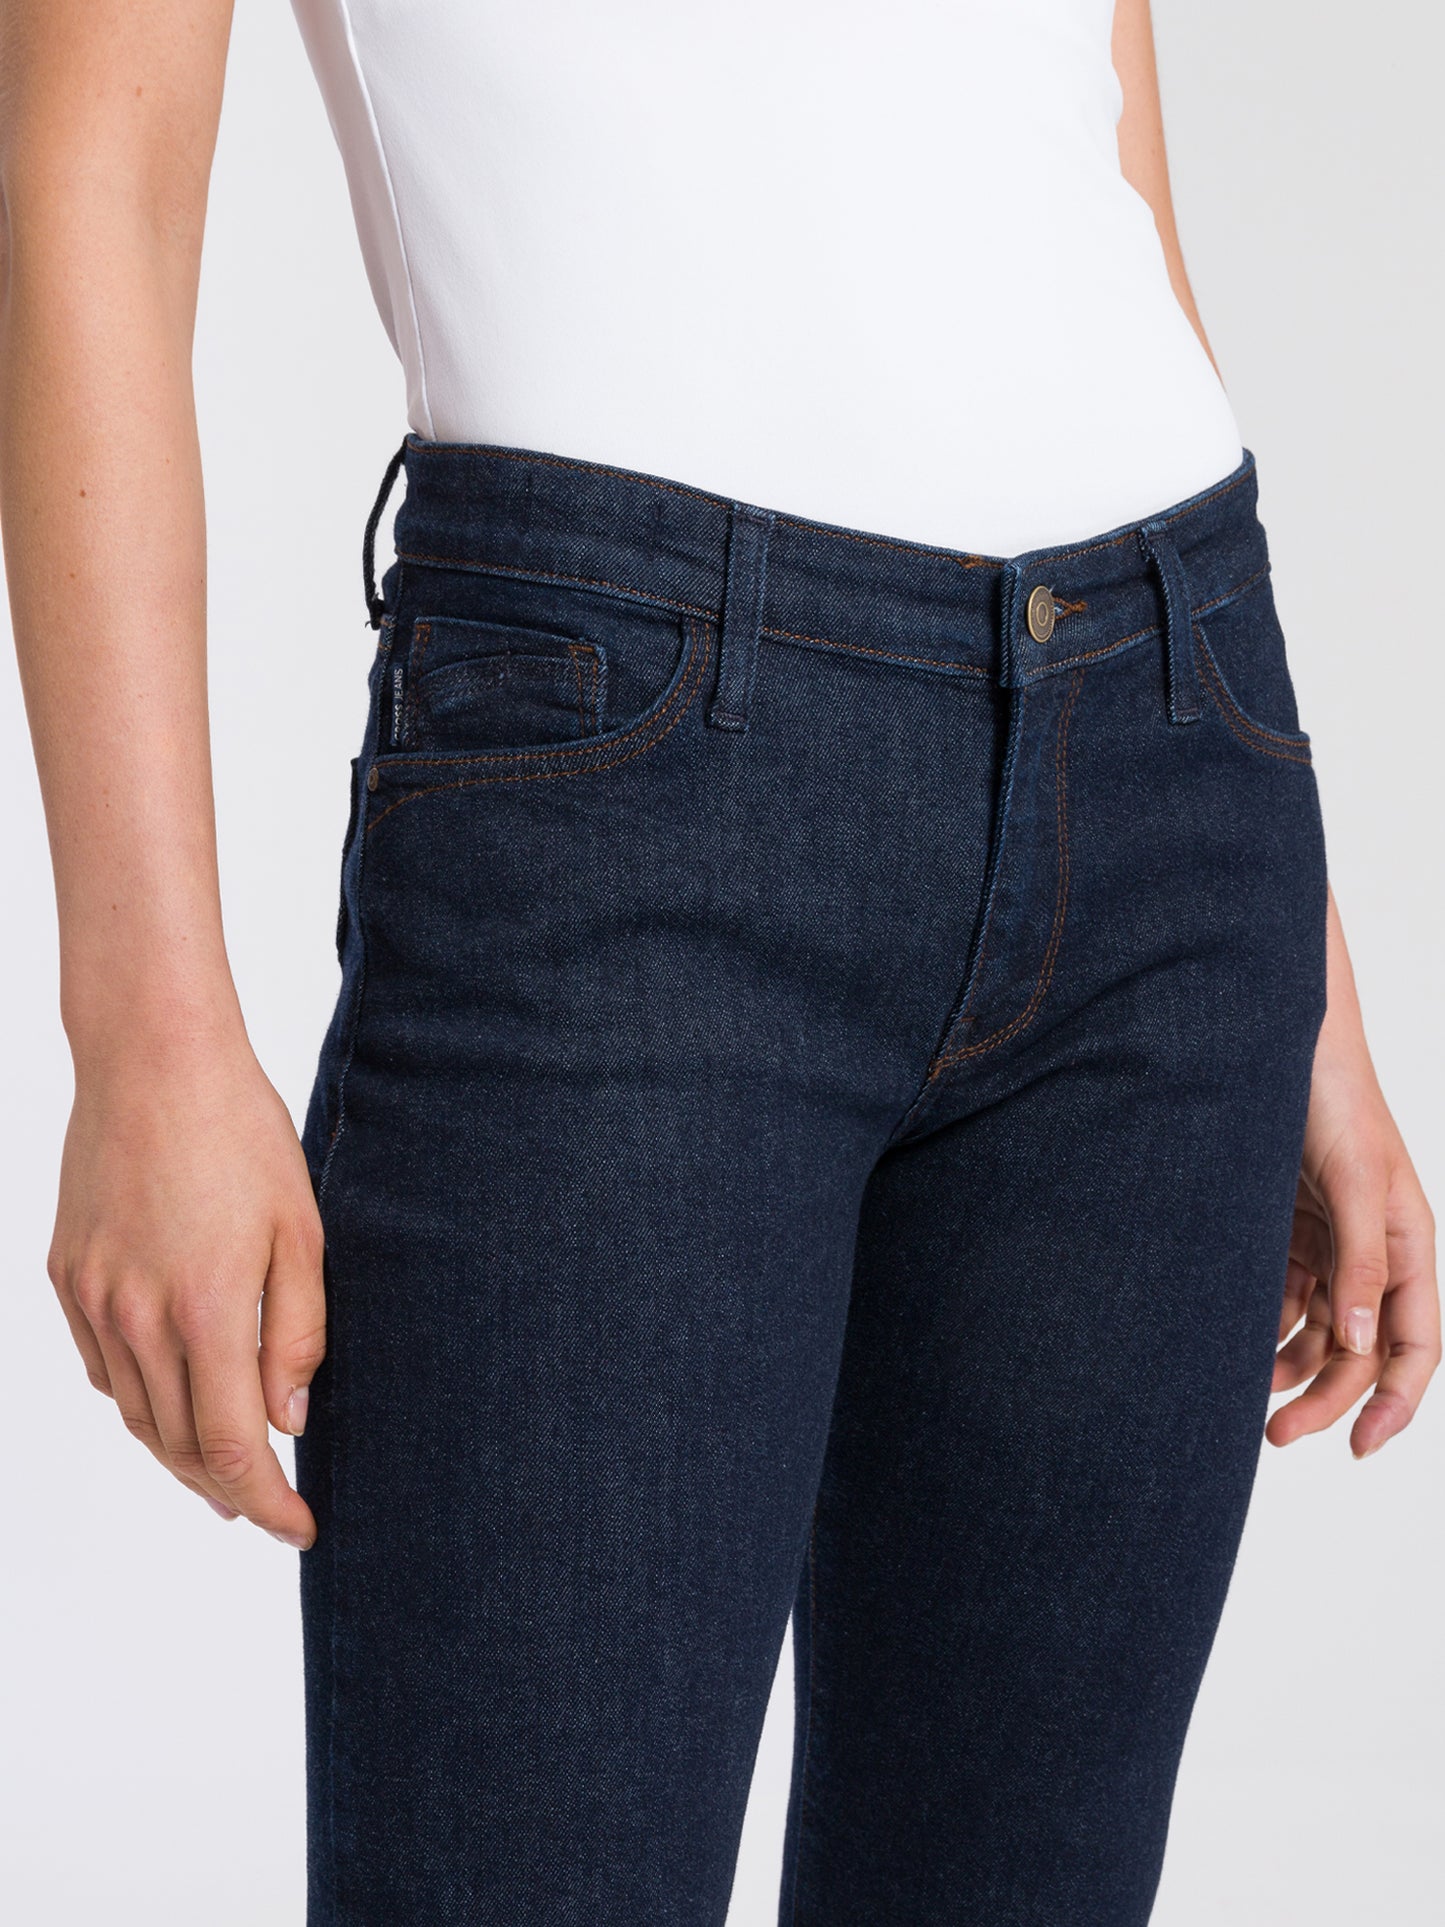 Lauren women's jeans regular fit high waist bootcut rinsed